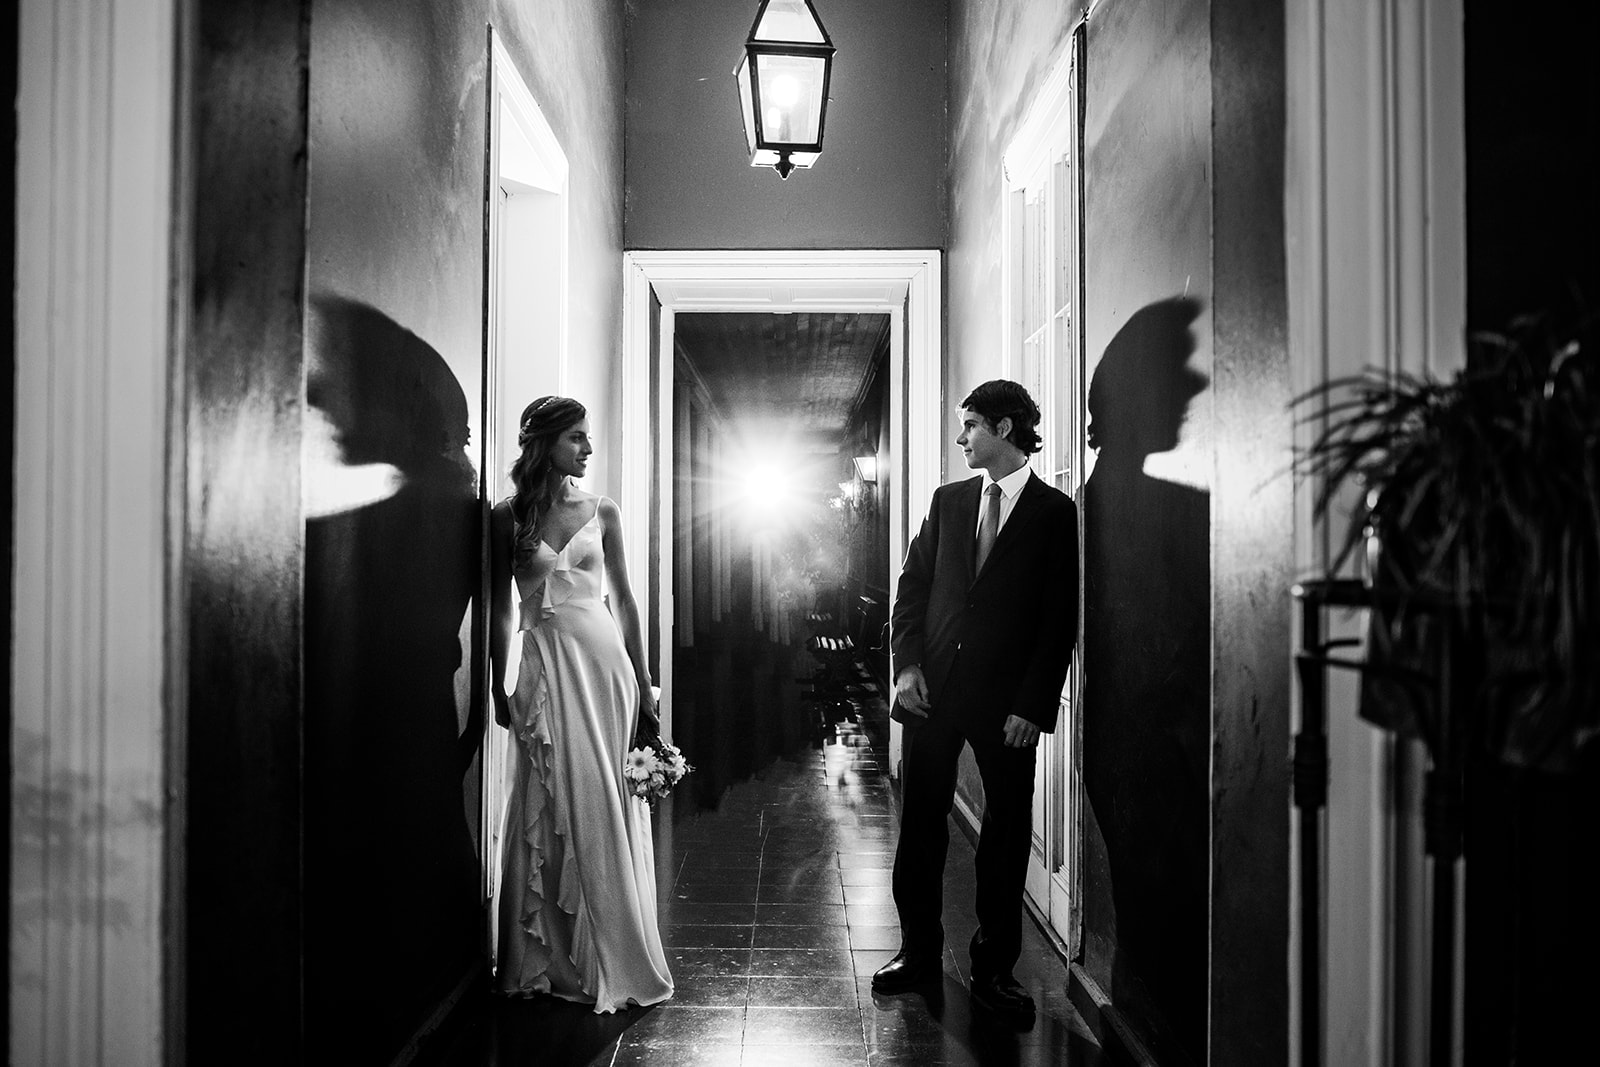 Matrimonio en Casona Perez Ossa, fotos de matrimonio en Santiago de Chile y la V Regiónó, fotos de bodas en Casona Perez